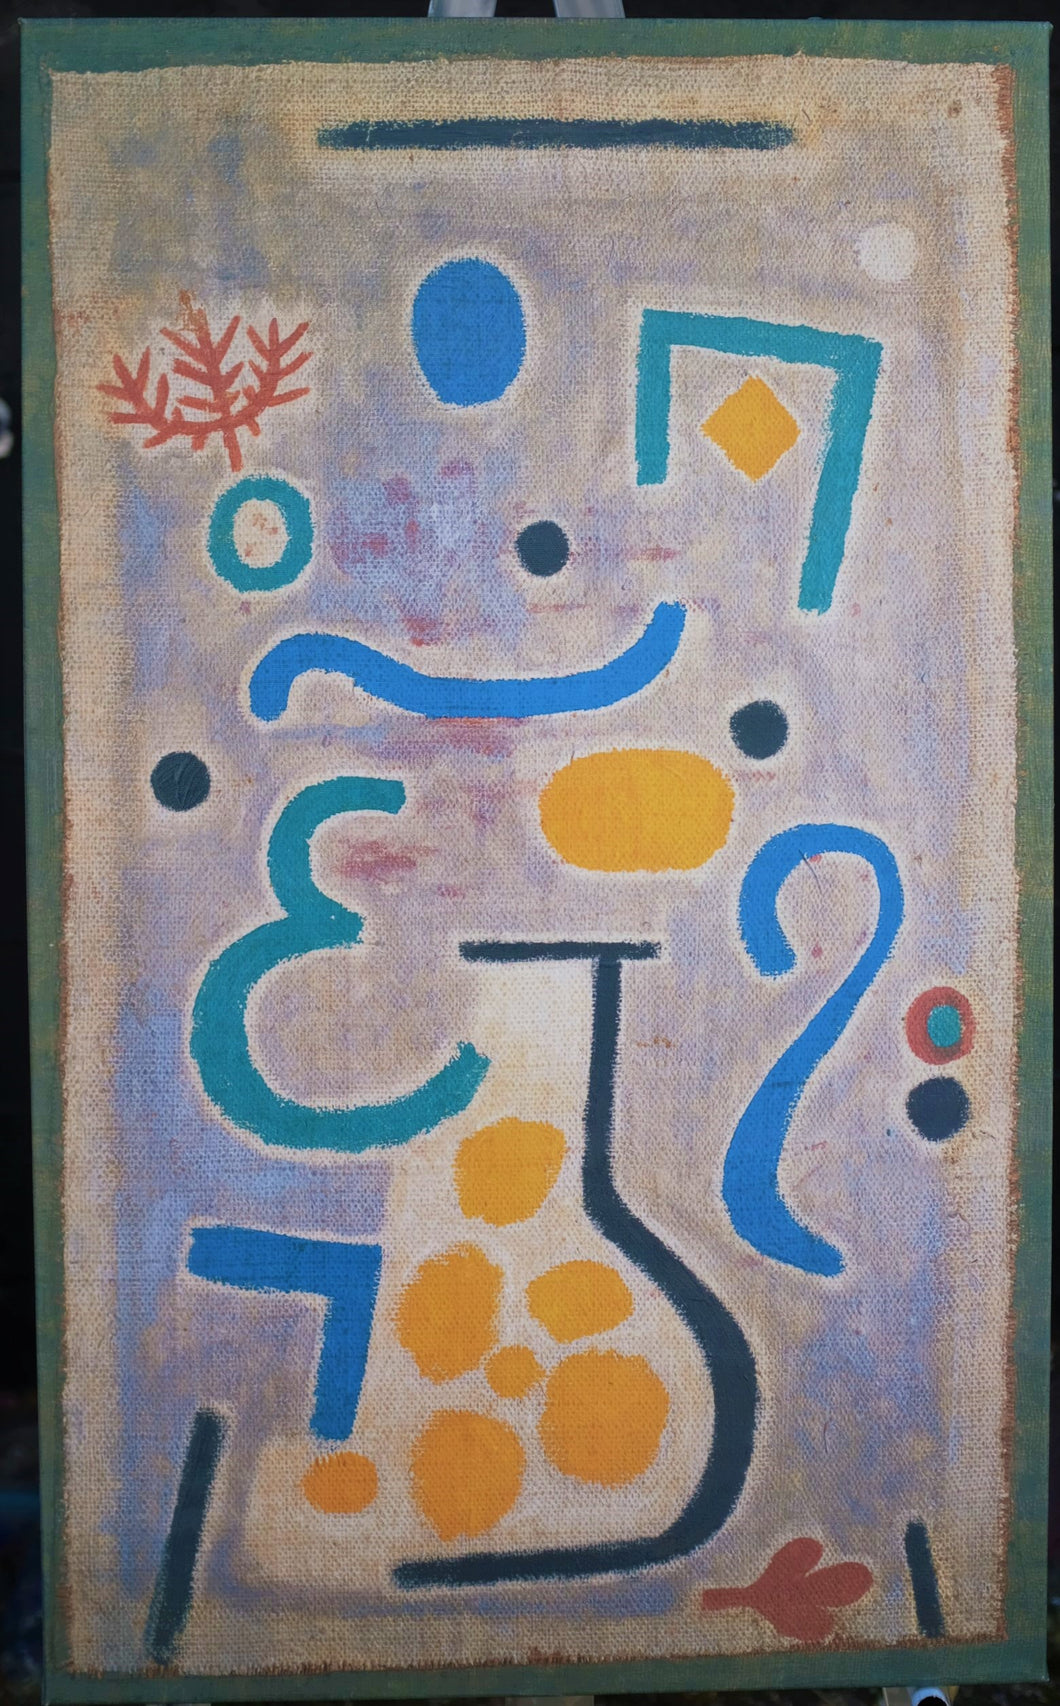 B-0081 The Vase by Paul Klee 1938